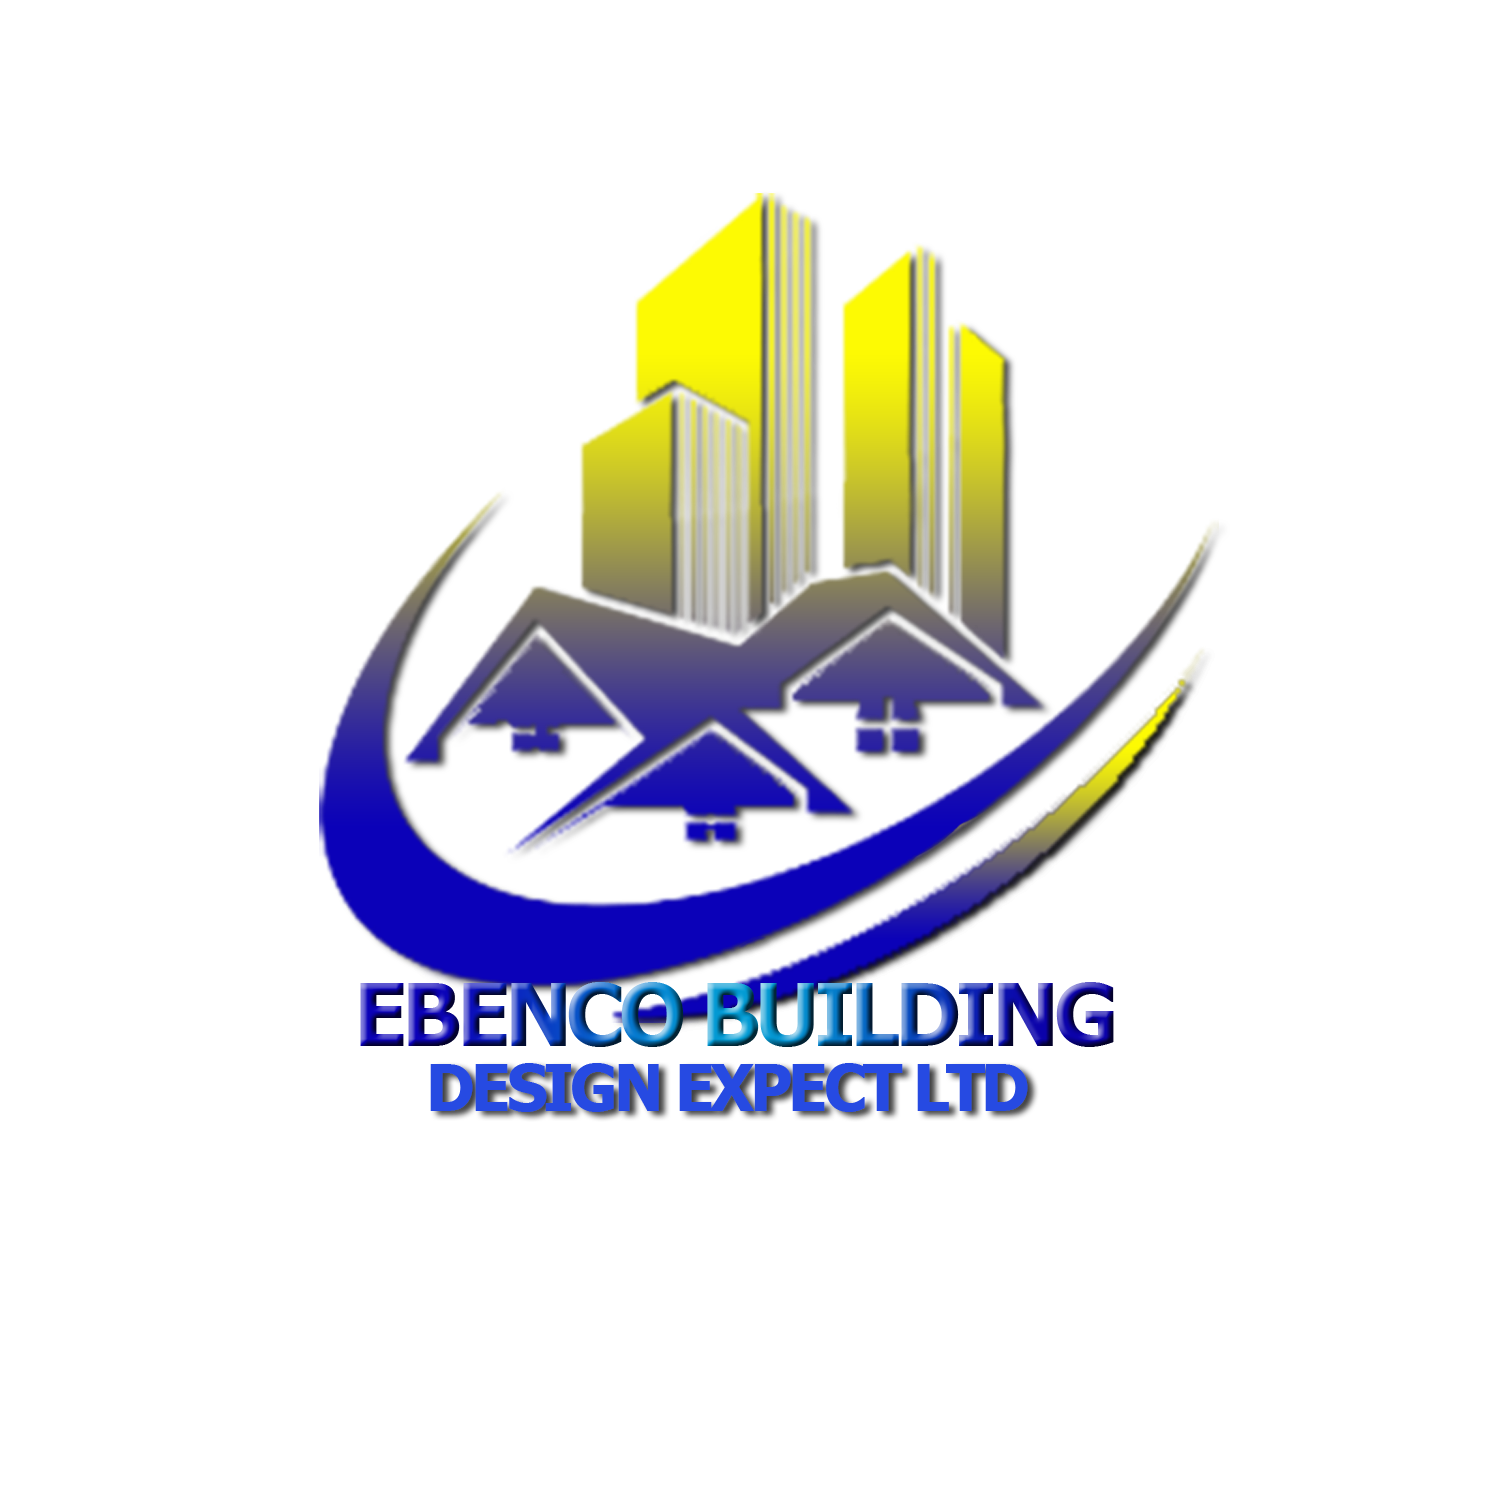 Ebenco Building Design - Home